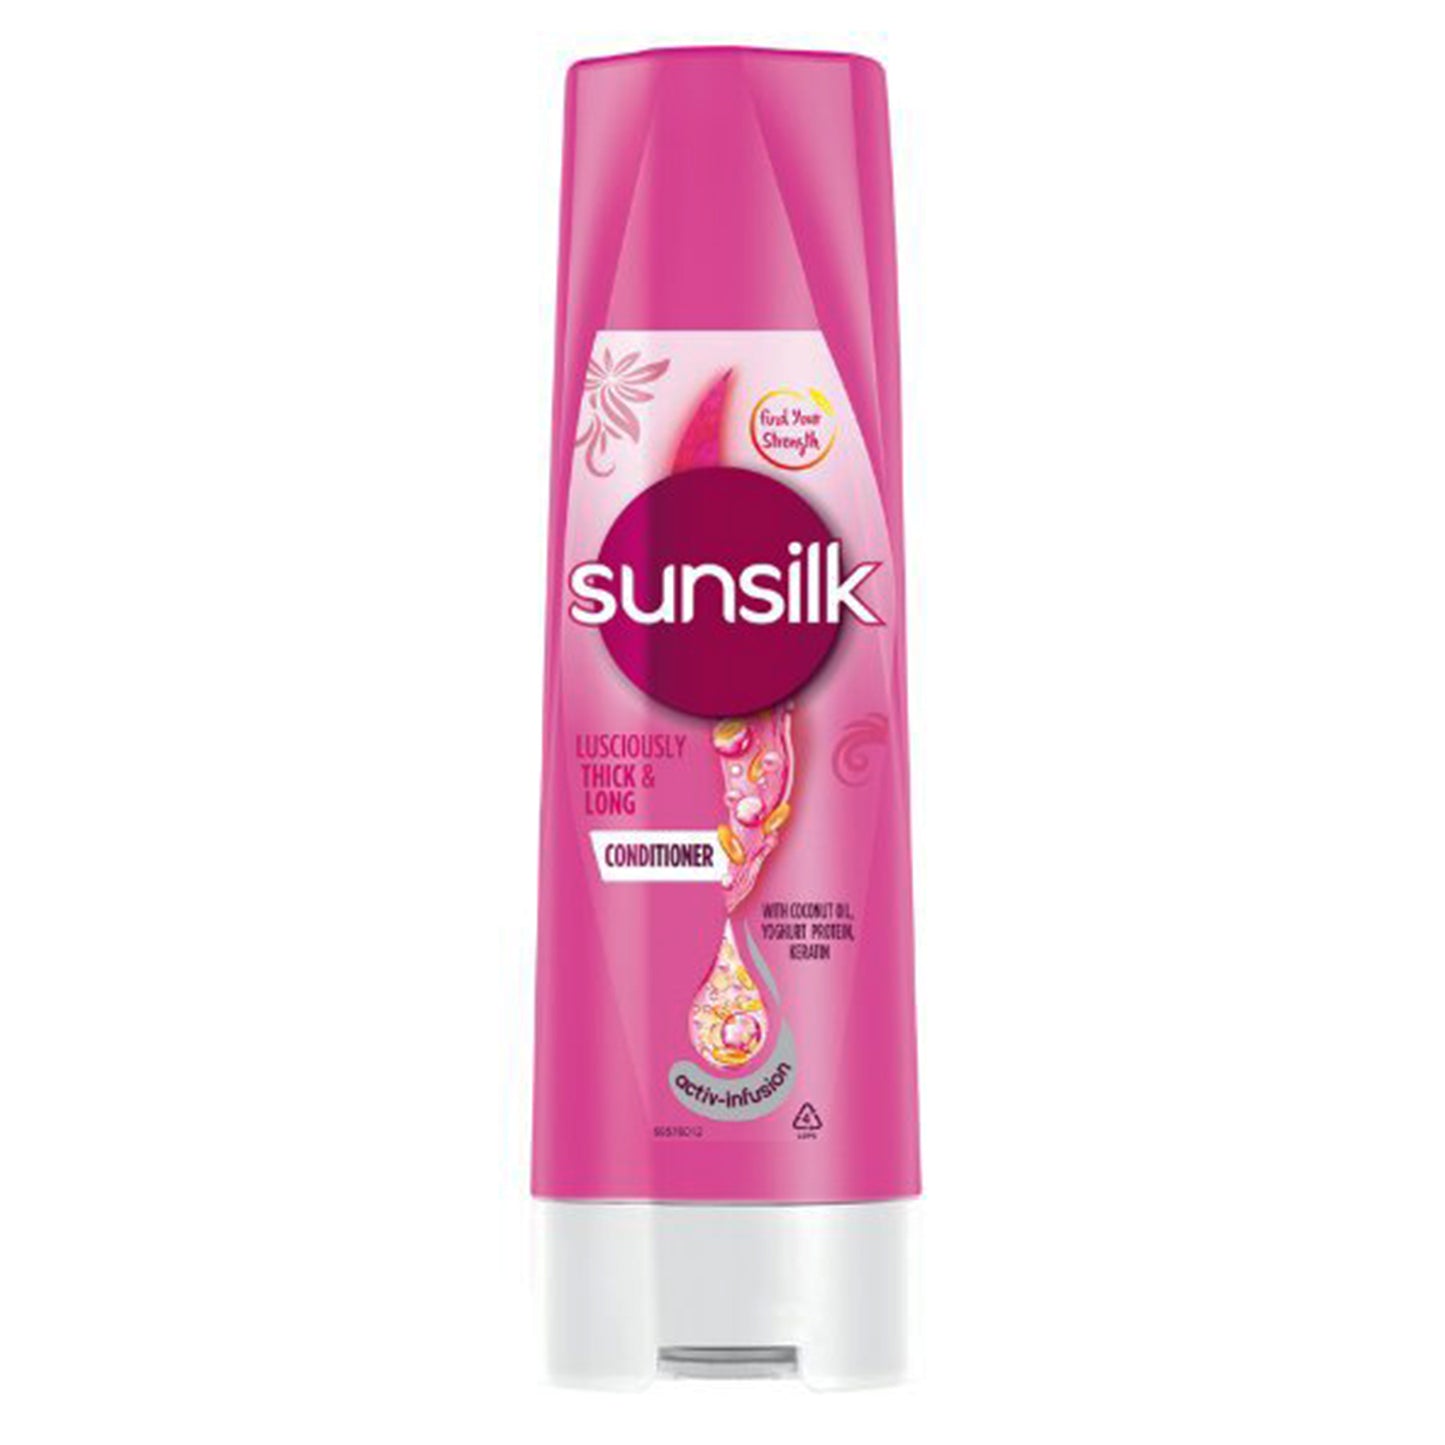 Après-shampoing épais et long Sunsilk (180 ml)